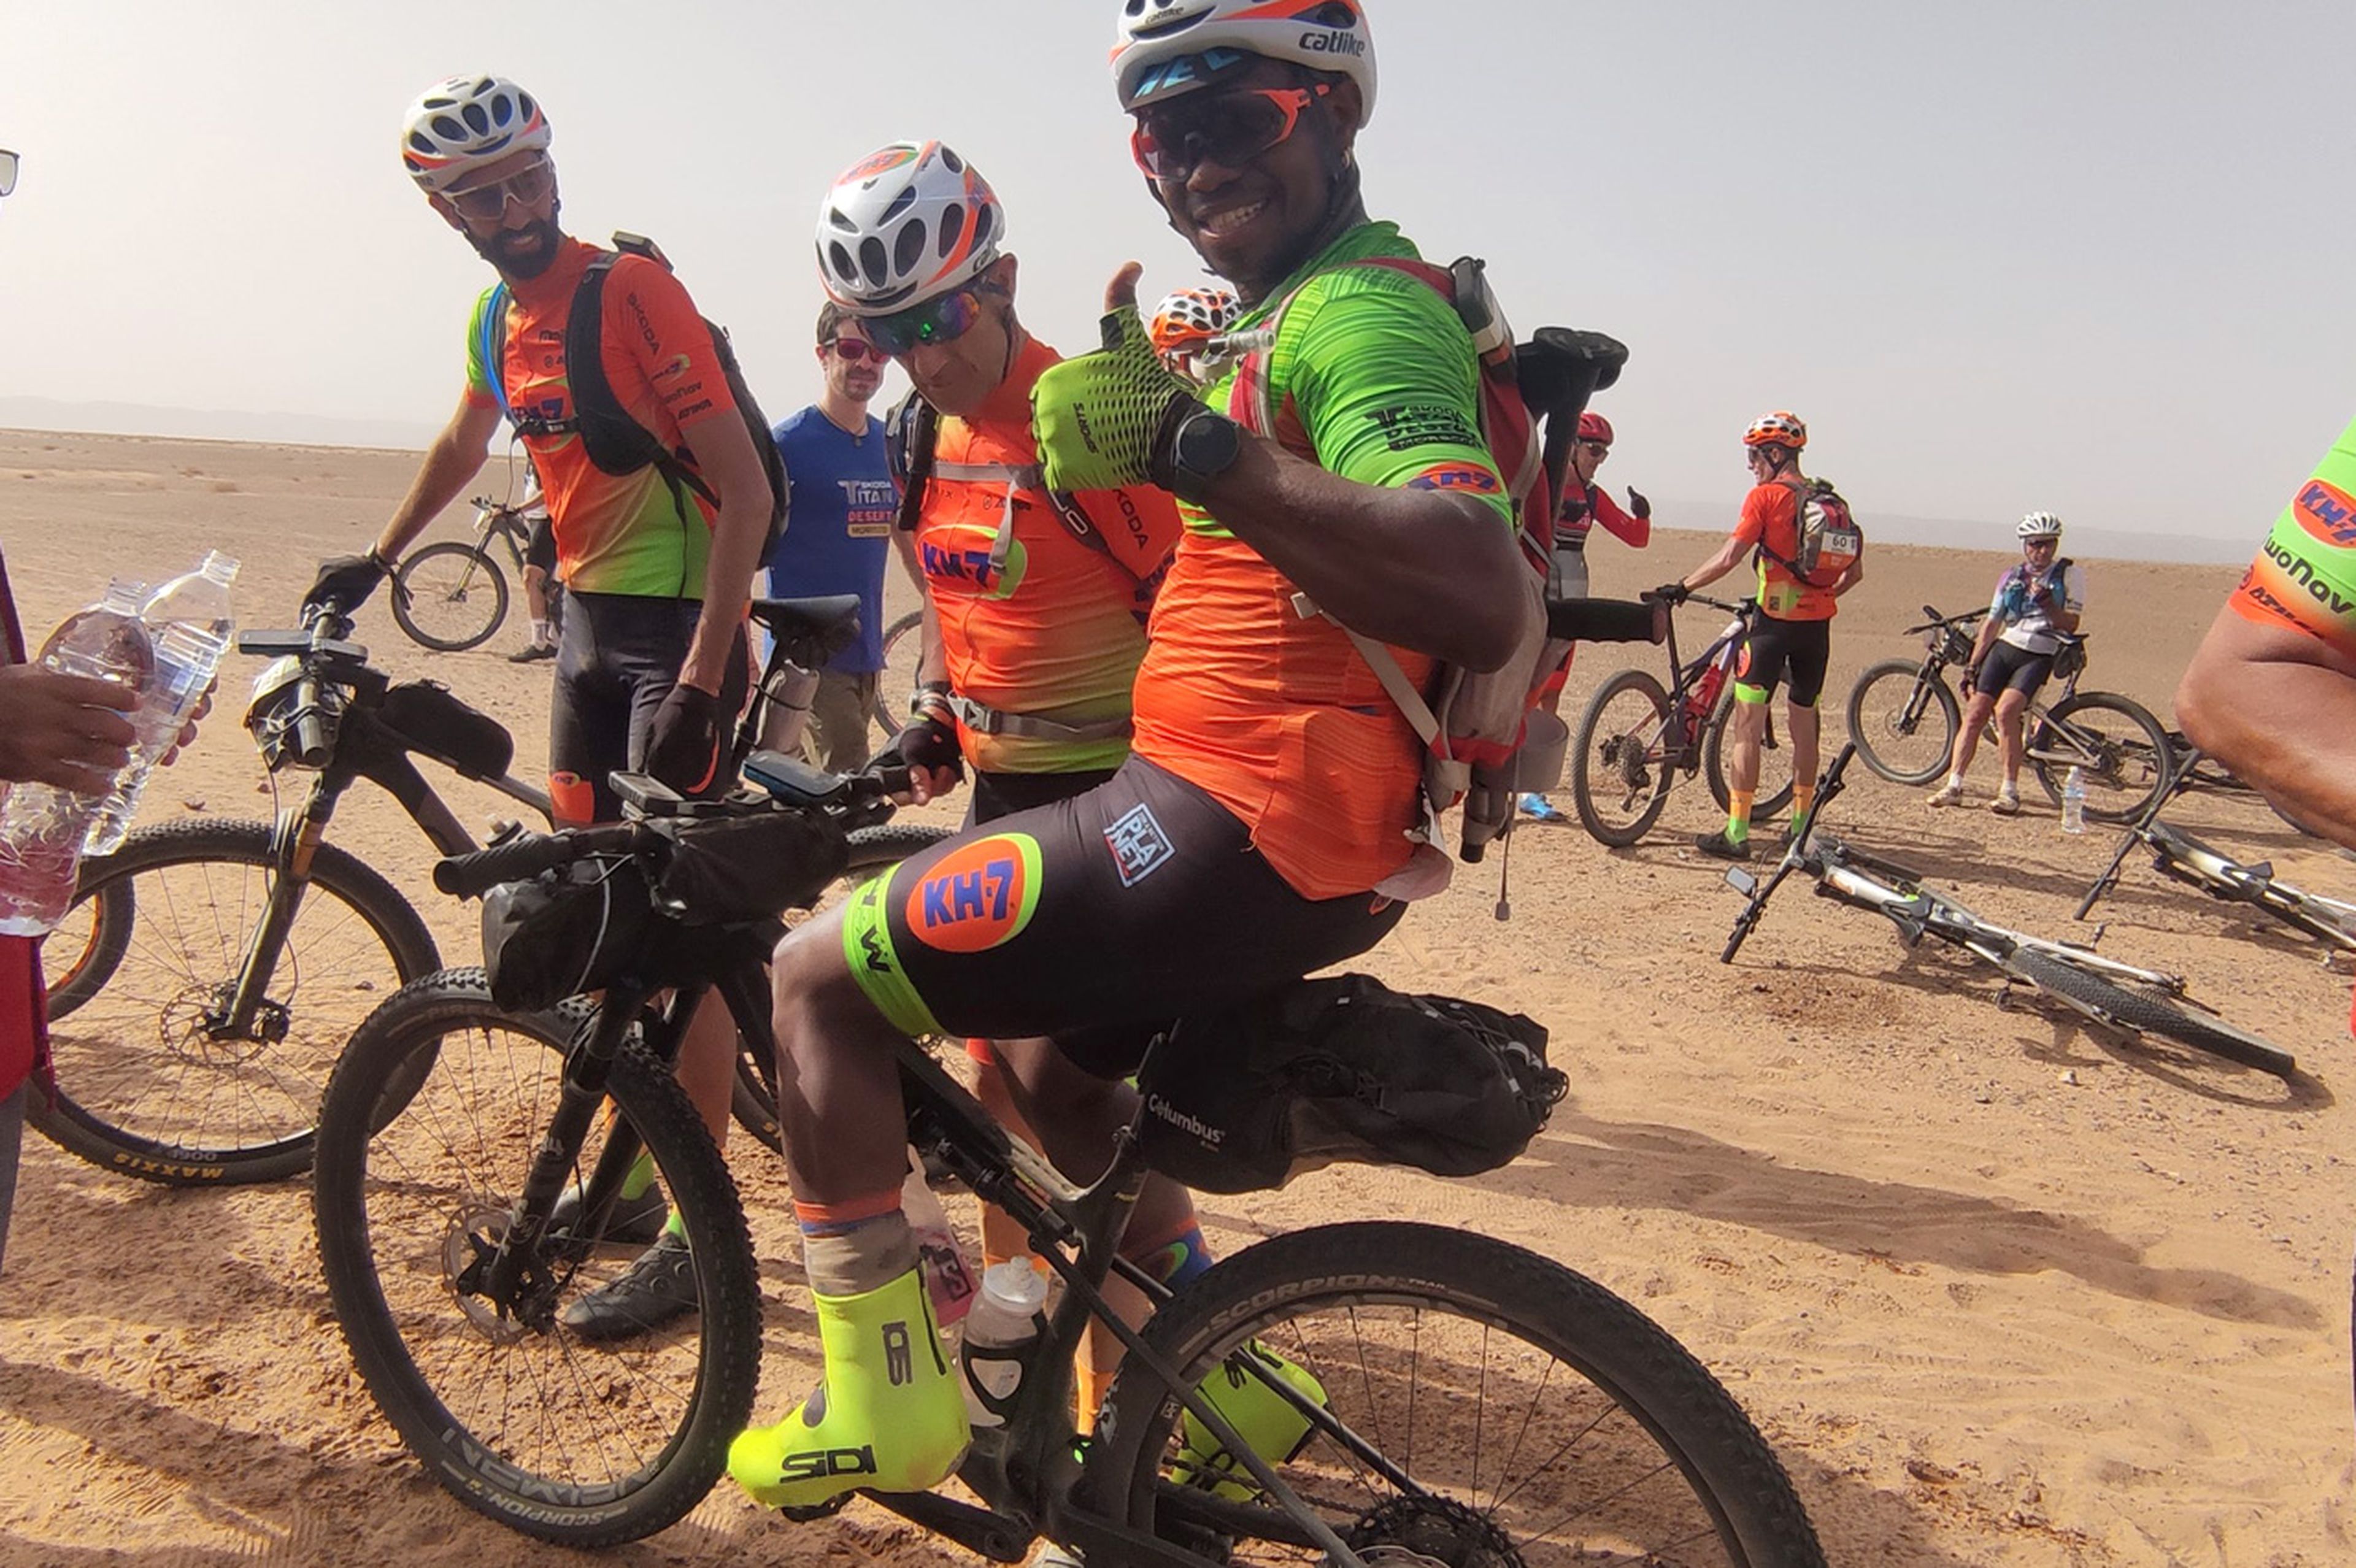 Termina la carrera en bicicleta por el desierto más dura que existe con un 81% de discapacidad. Esta es la inspiradora historia de Lester Fernández